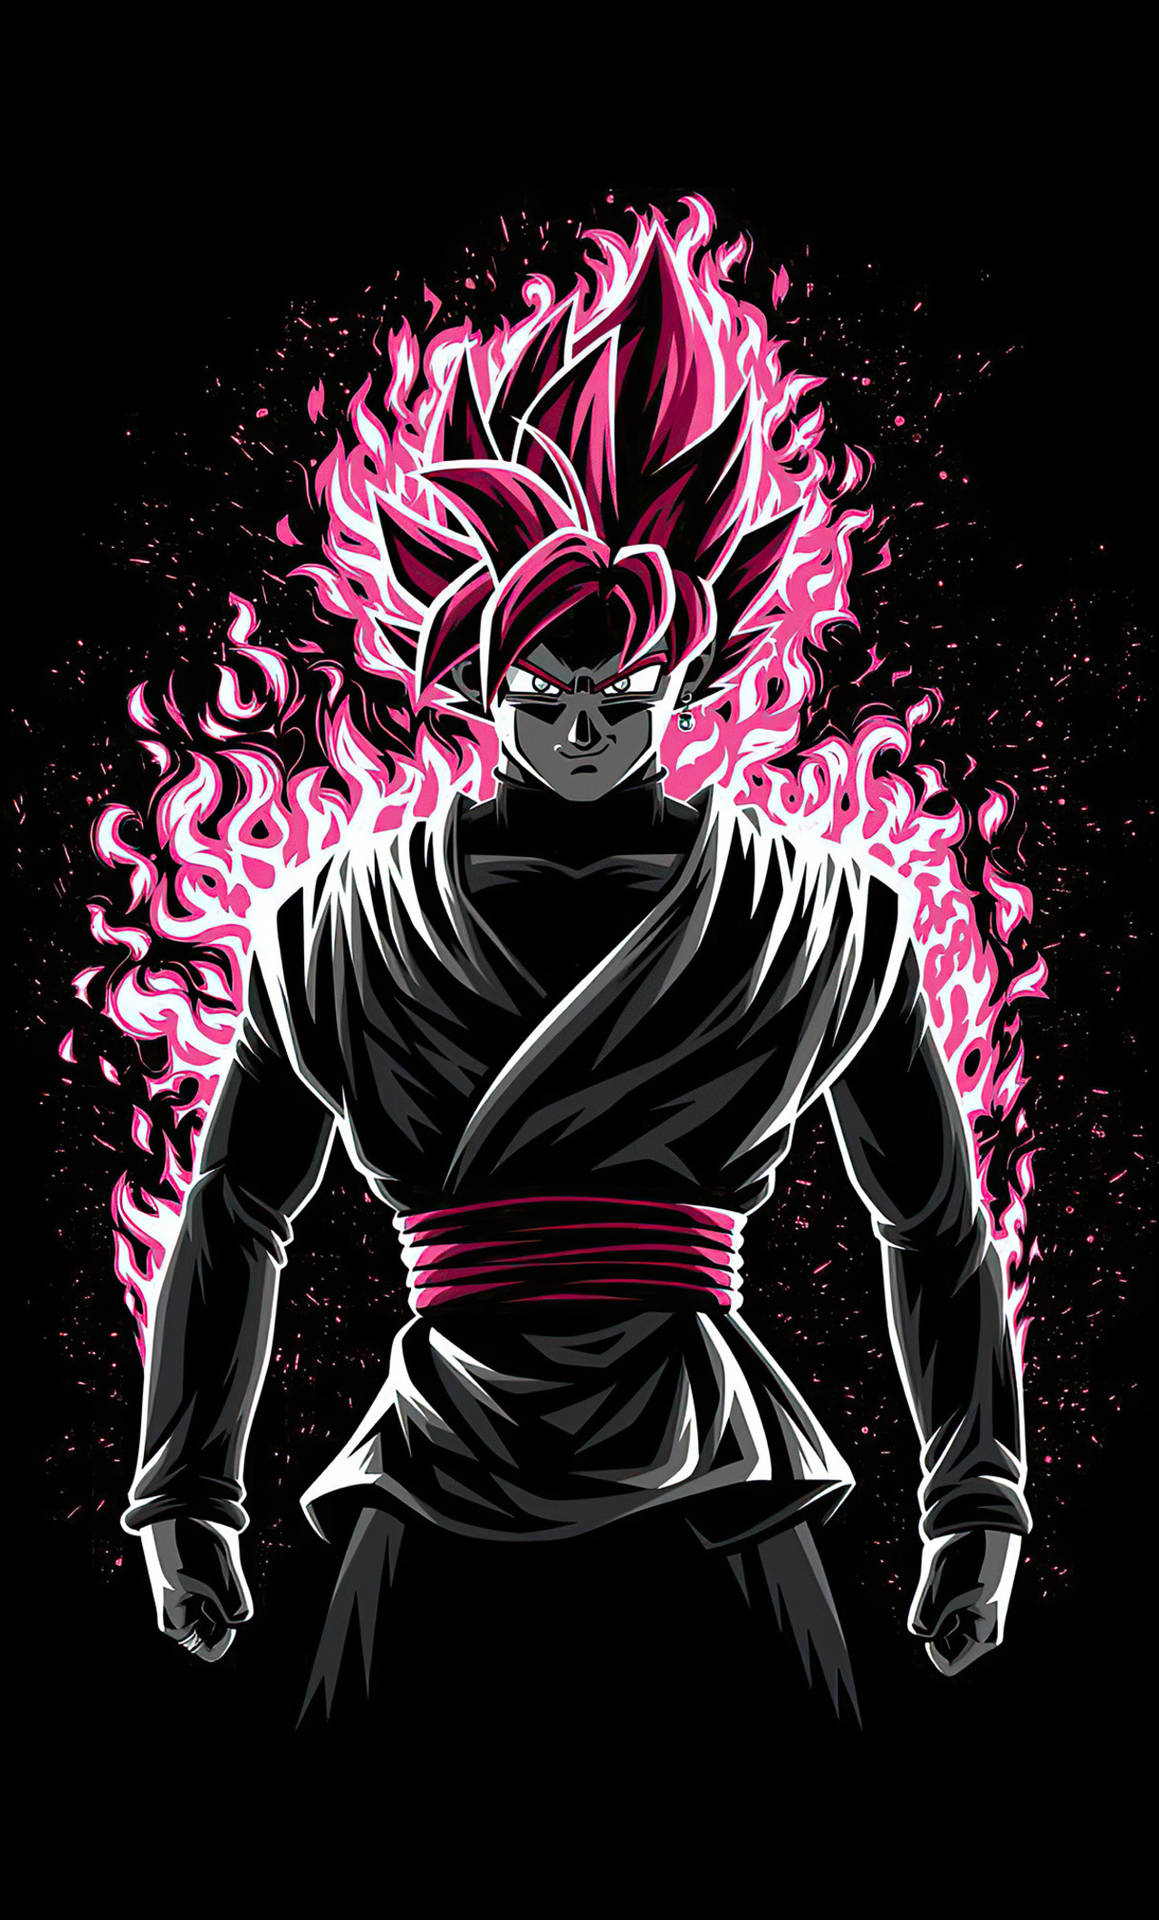 Pinkflammen Goku Dragon Ball Z Iphone Wallpaper